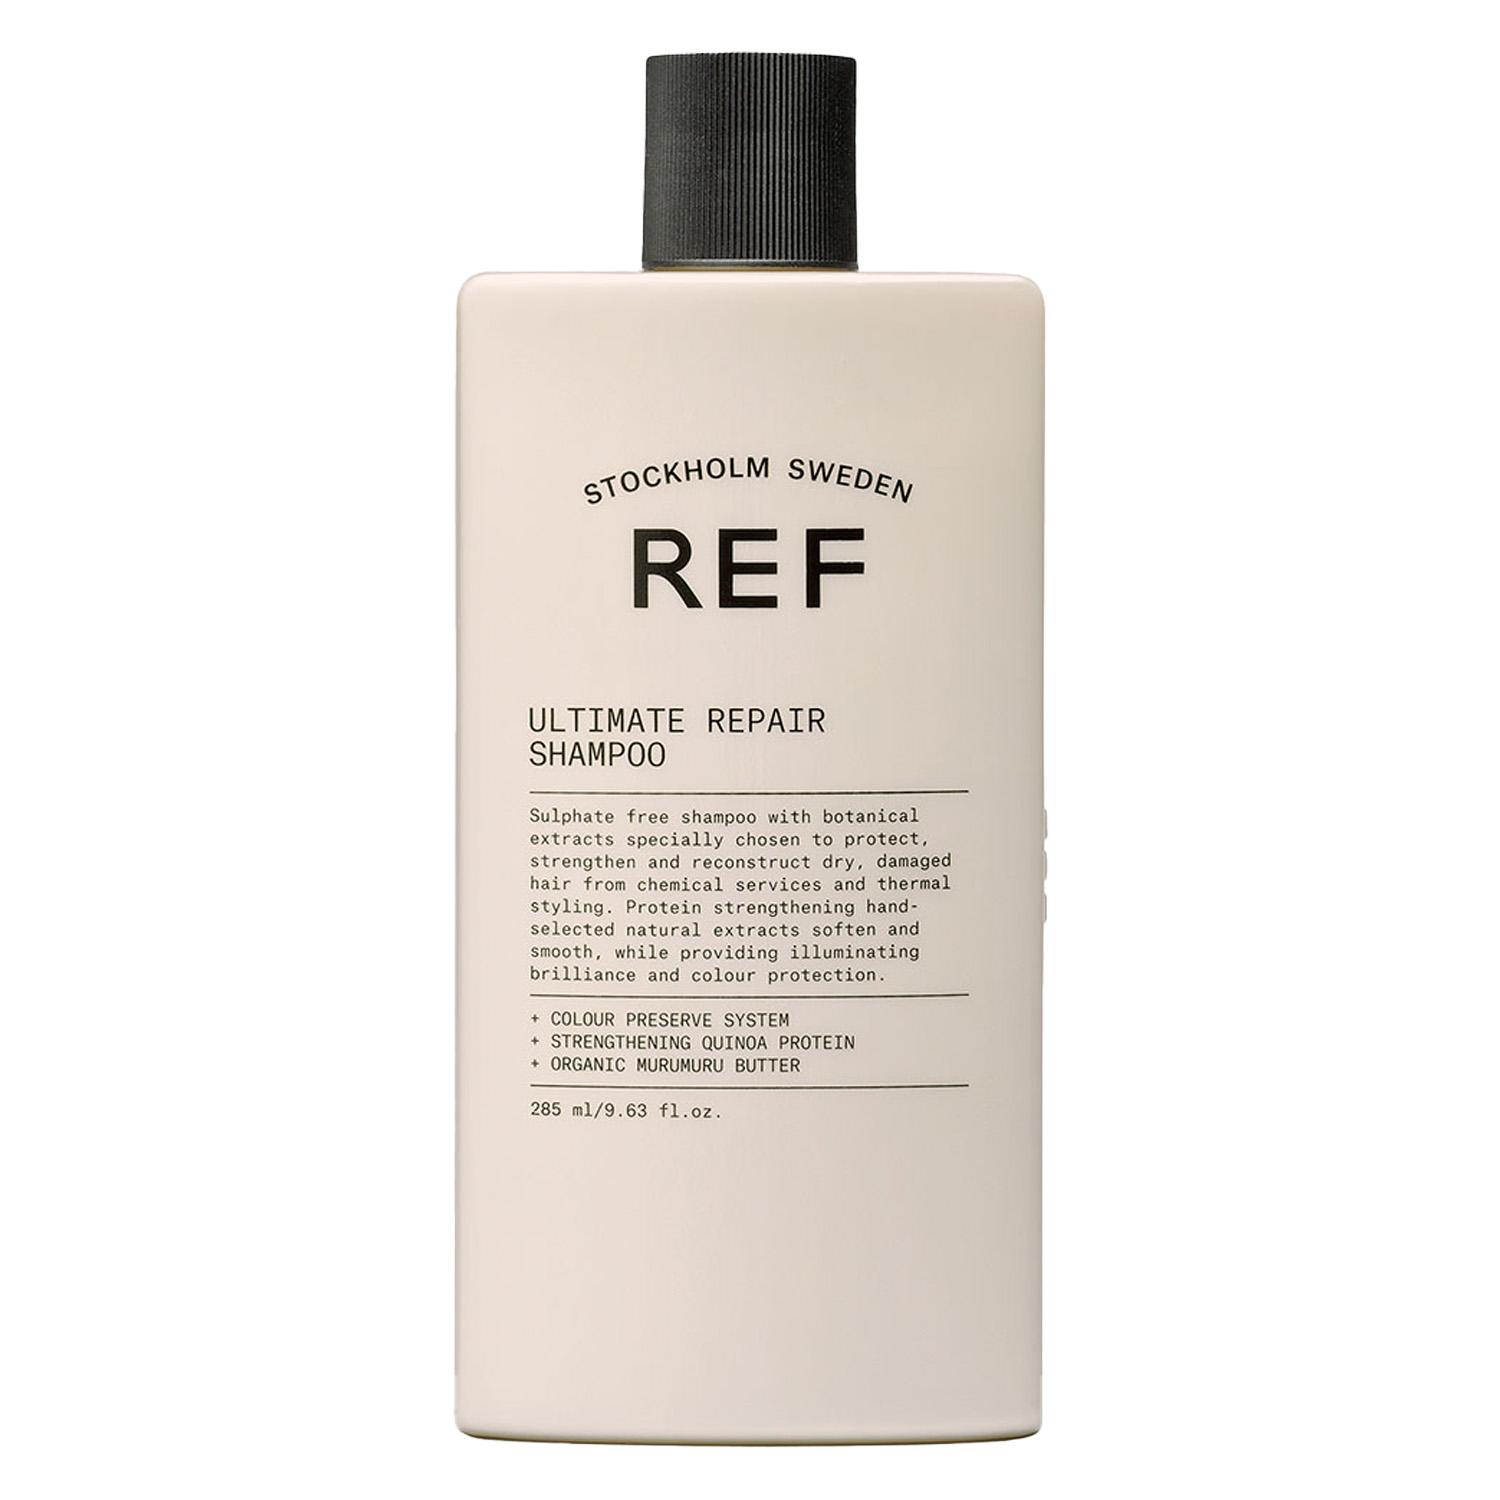 REF Shampoo - Ultimate Repair Shampoo